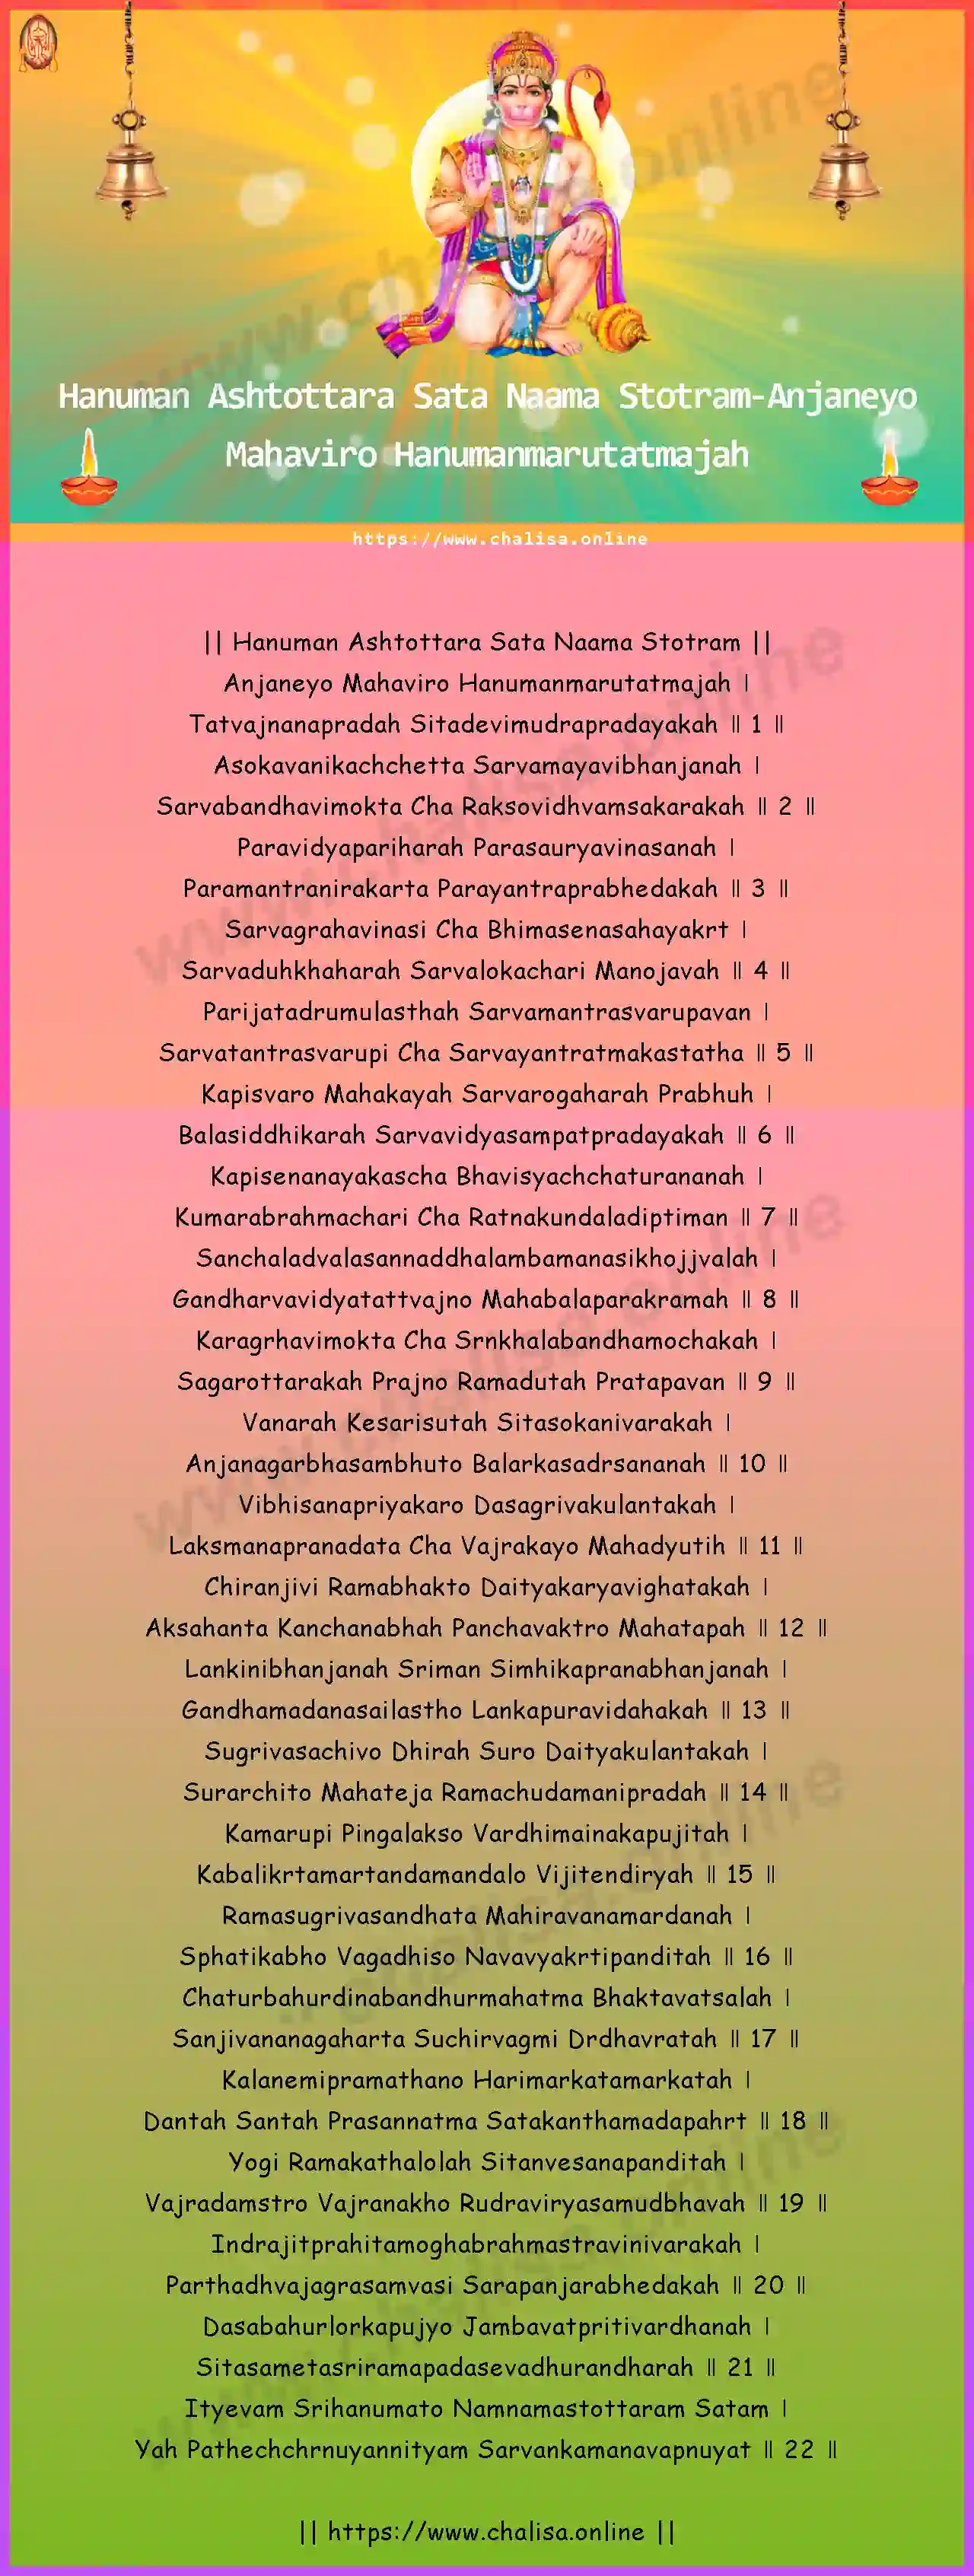 anjaneyo-mahaviro-hanuman-ashtottara-sata-naama-stotram-english-english-lyrics-download